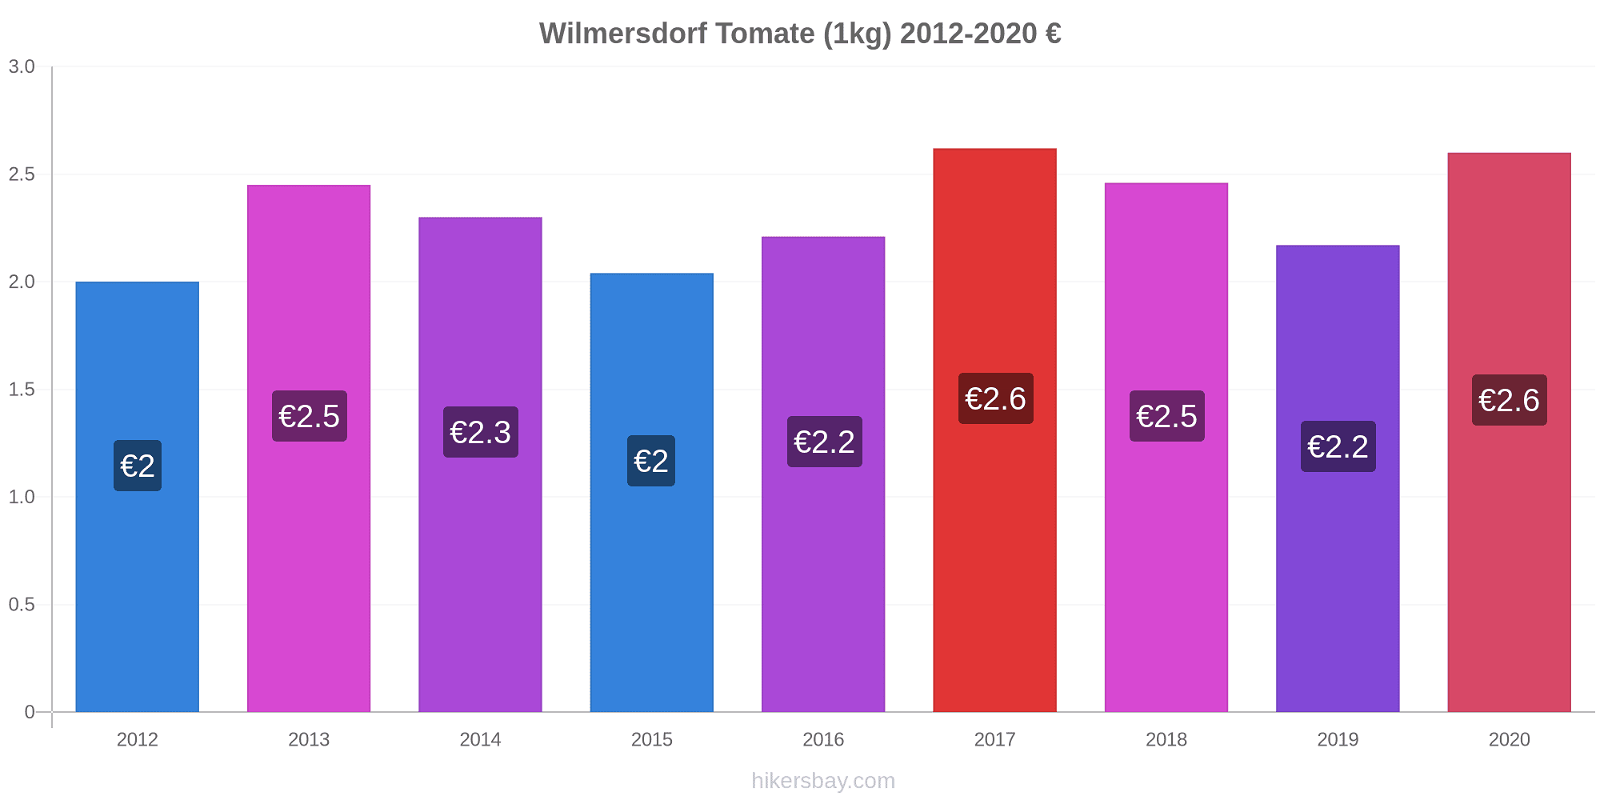 Wilmersdorf variação de preço Tomate (1kg) hikersbay.com